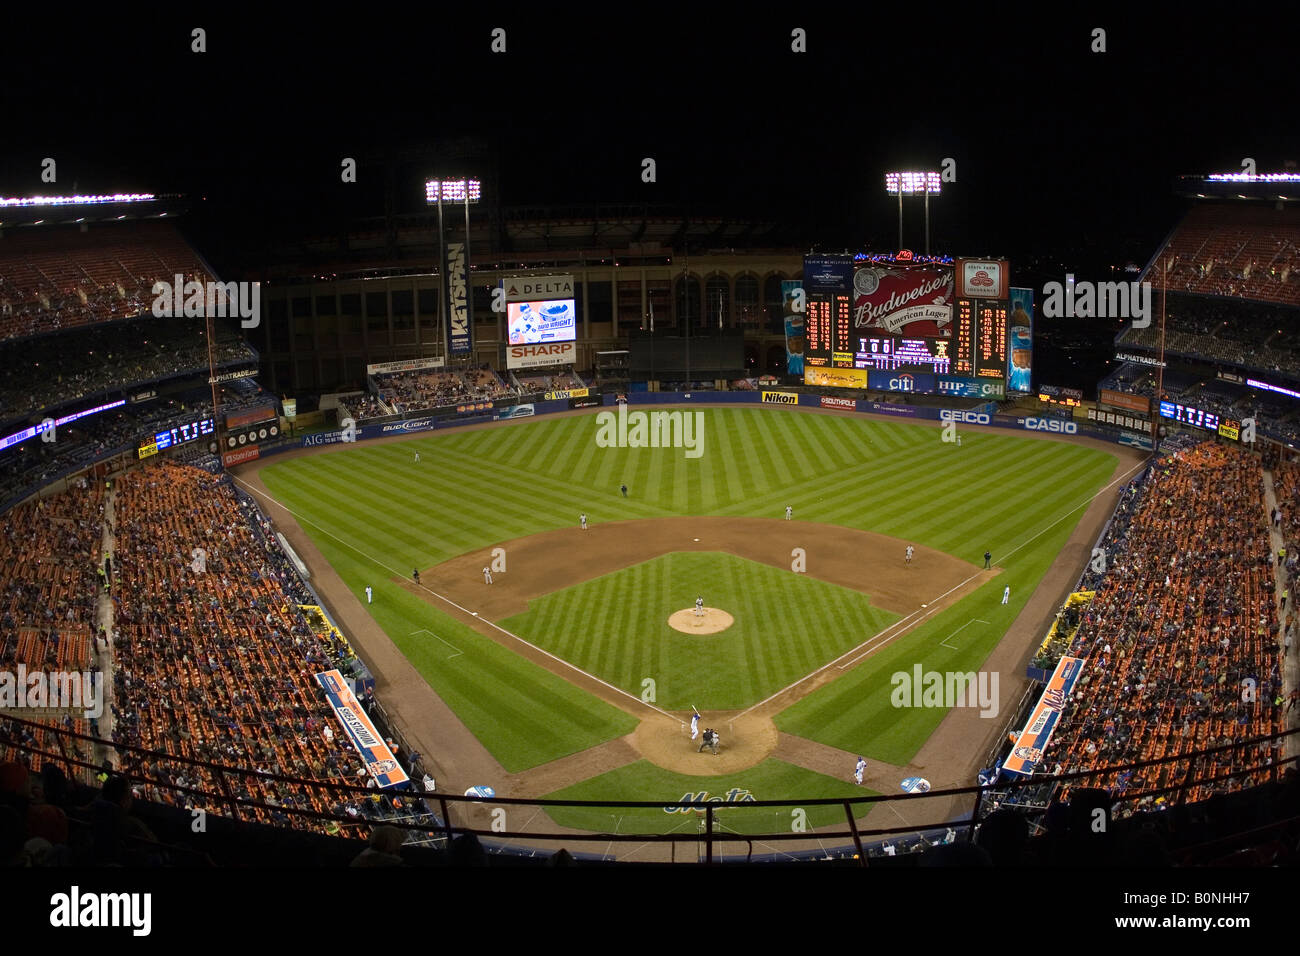 Vista de Shea Stadium durante un partido de béisbol de los Mets desde detrás del plato de home. Foto de stock